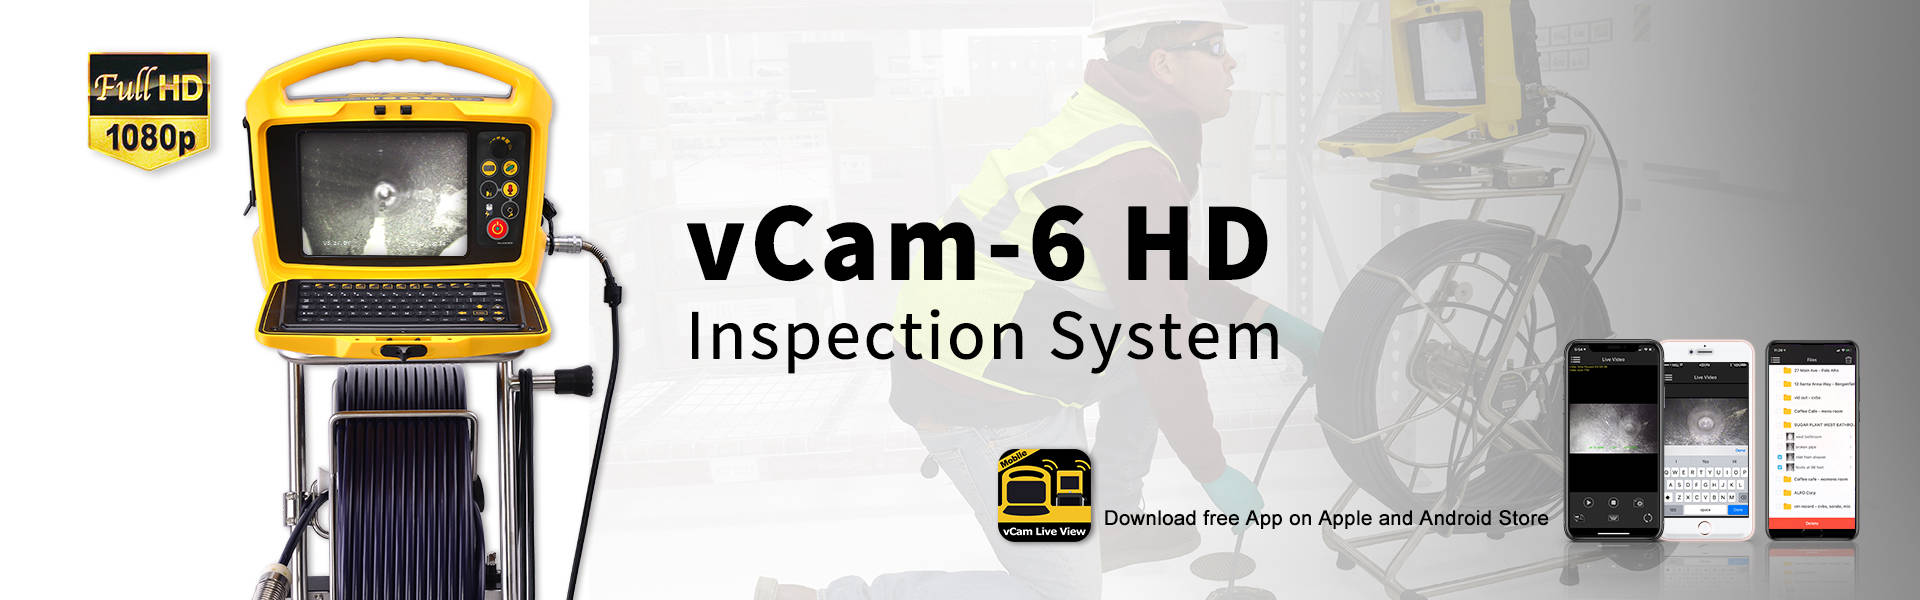 vCam-6 HD